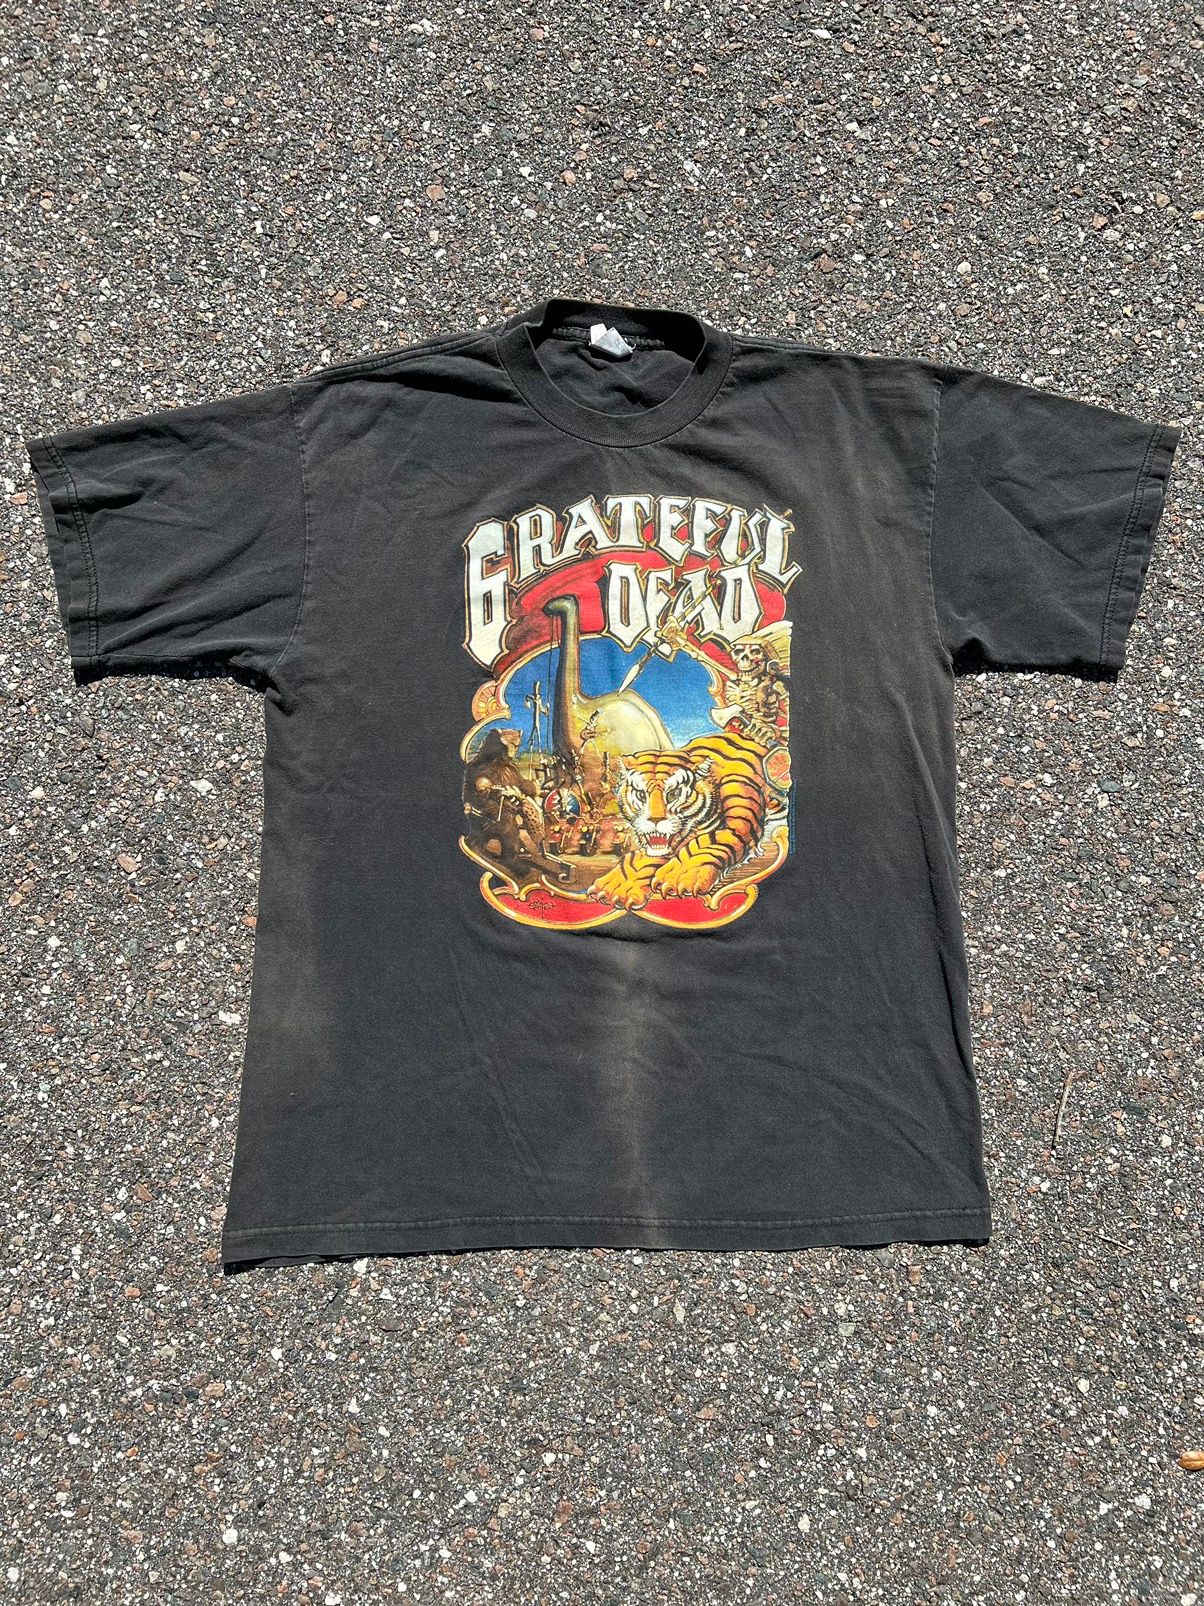 Vintage Vintage Grateful Dead 1996 Circus Cronies T-shirt XL Size US XL / EU 56 / 4 - 1 Preview